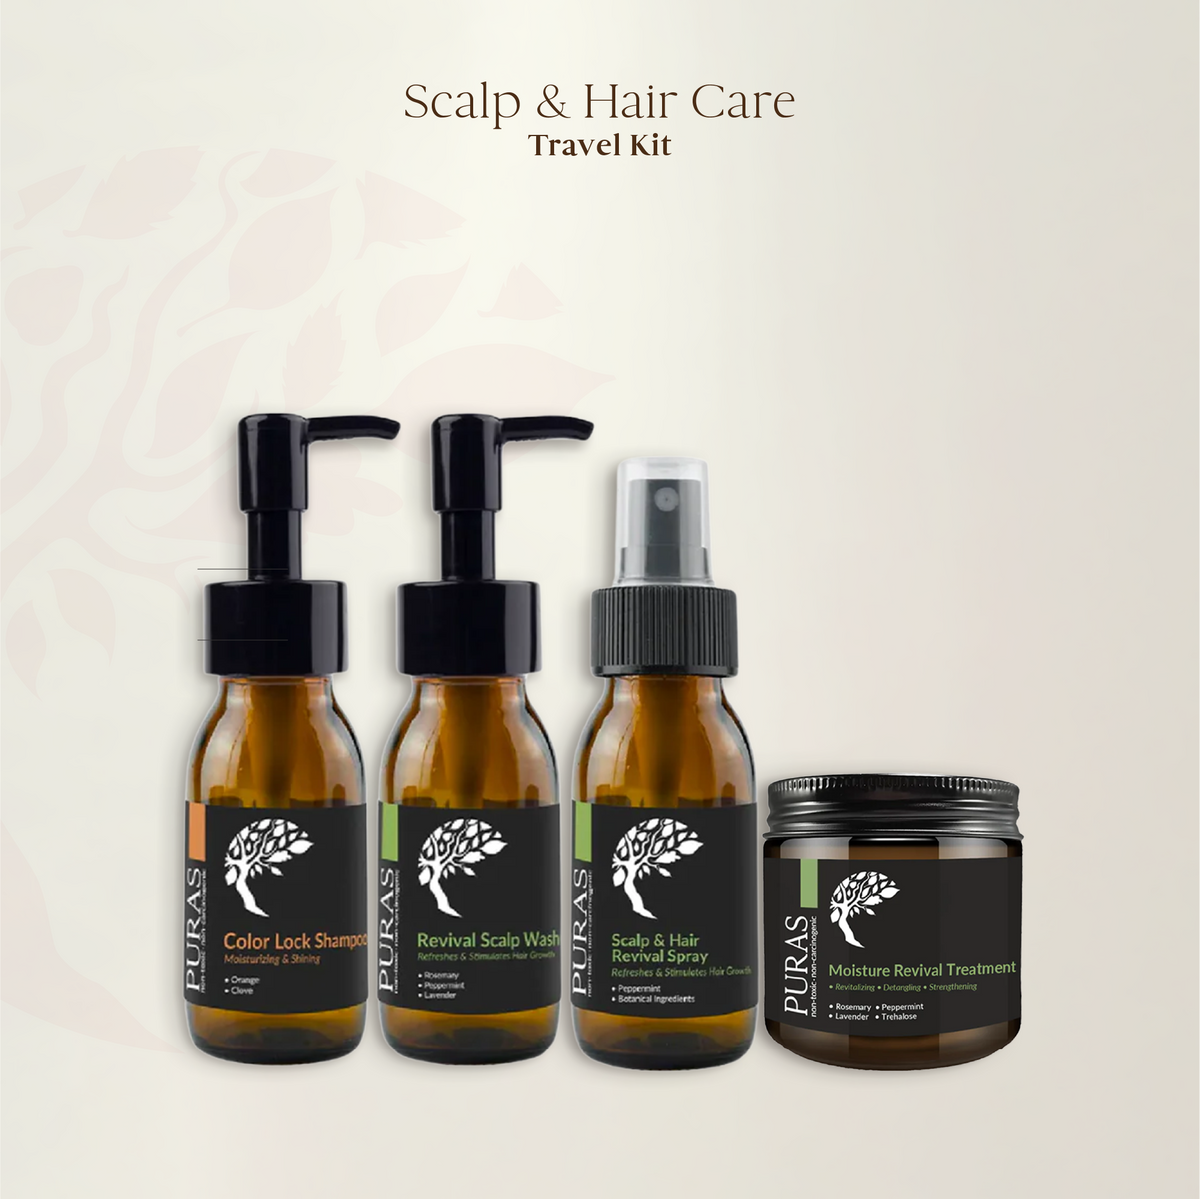 Scalp & Hair Care Travel Kit